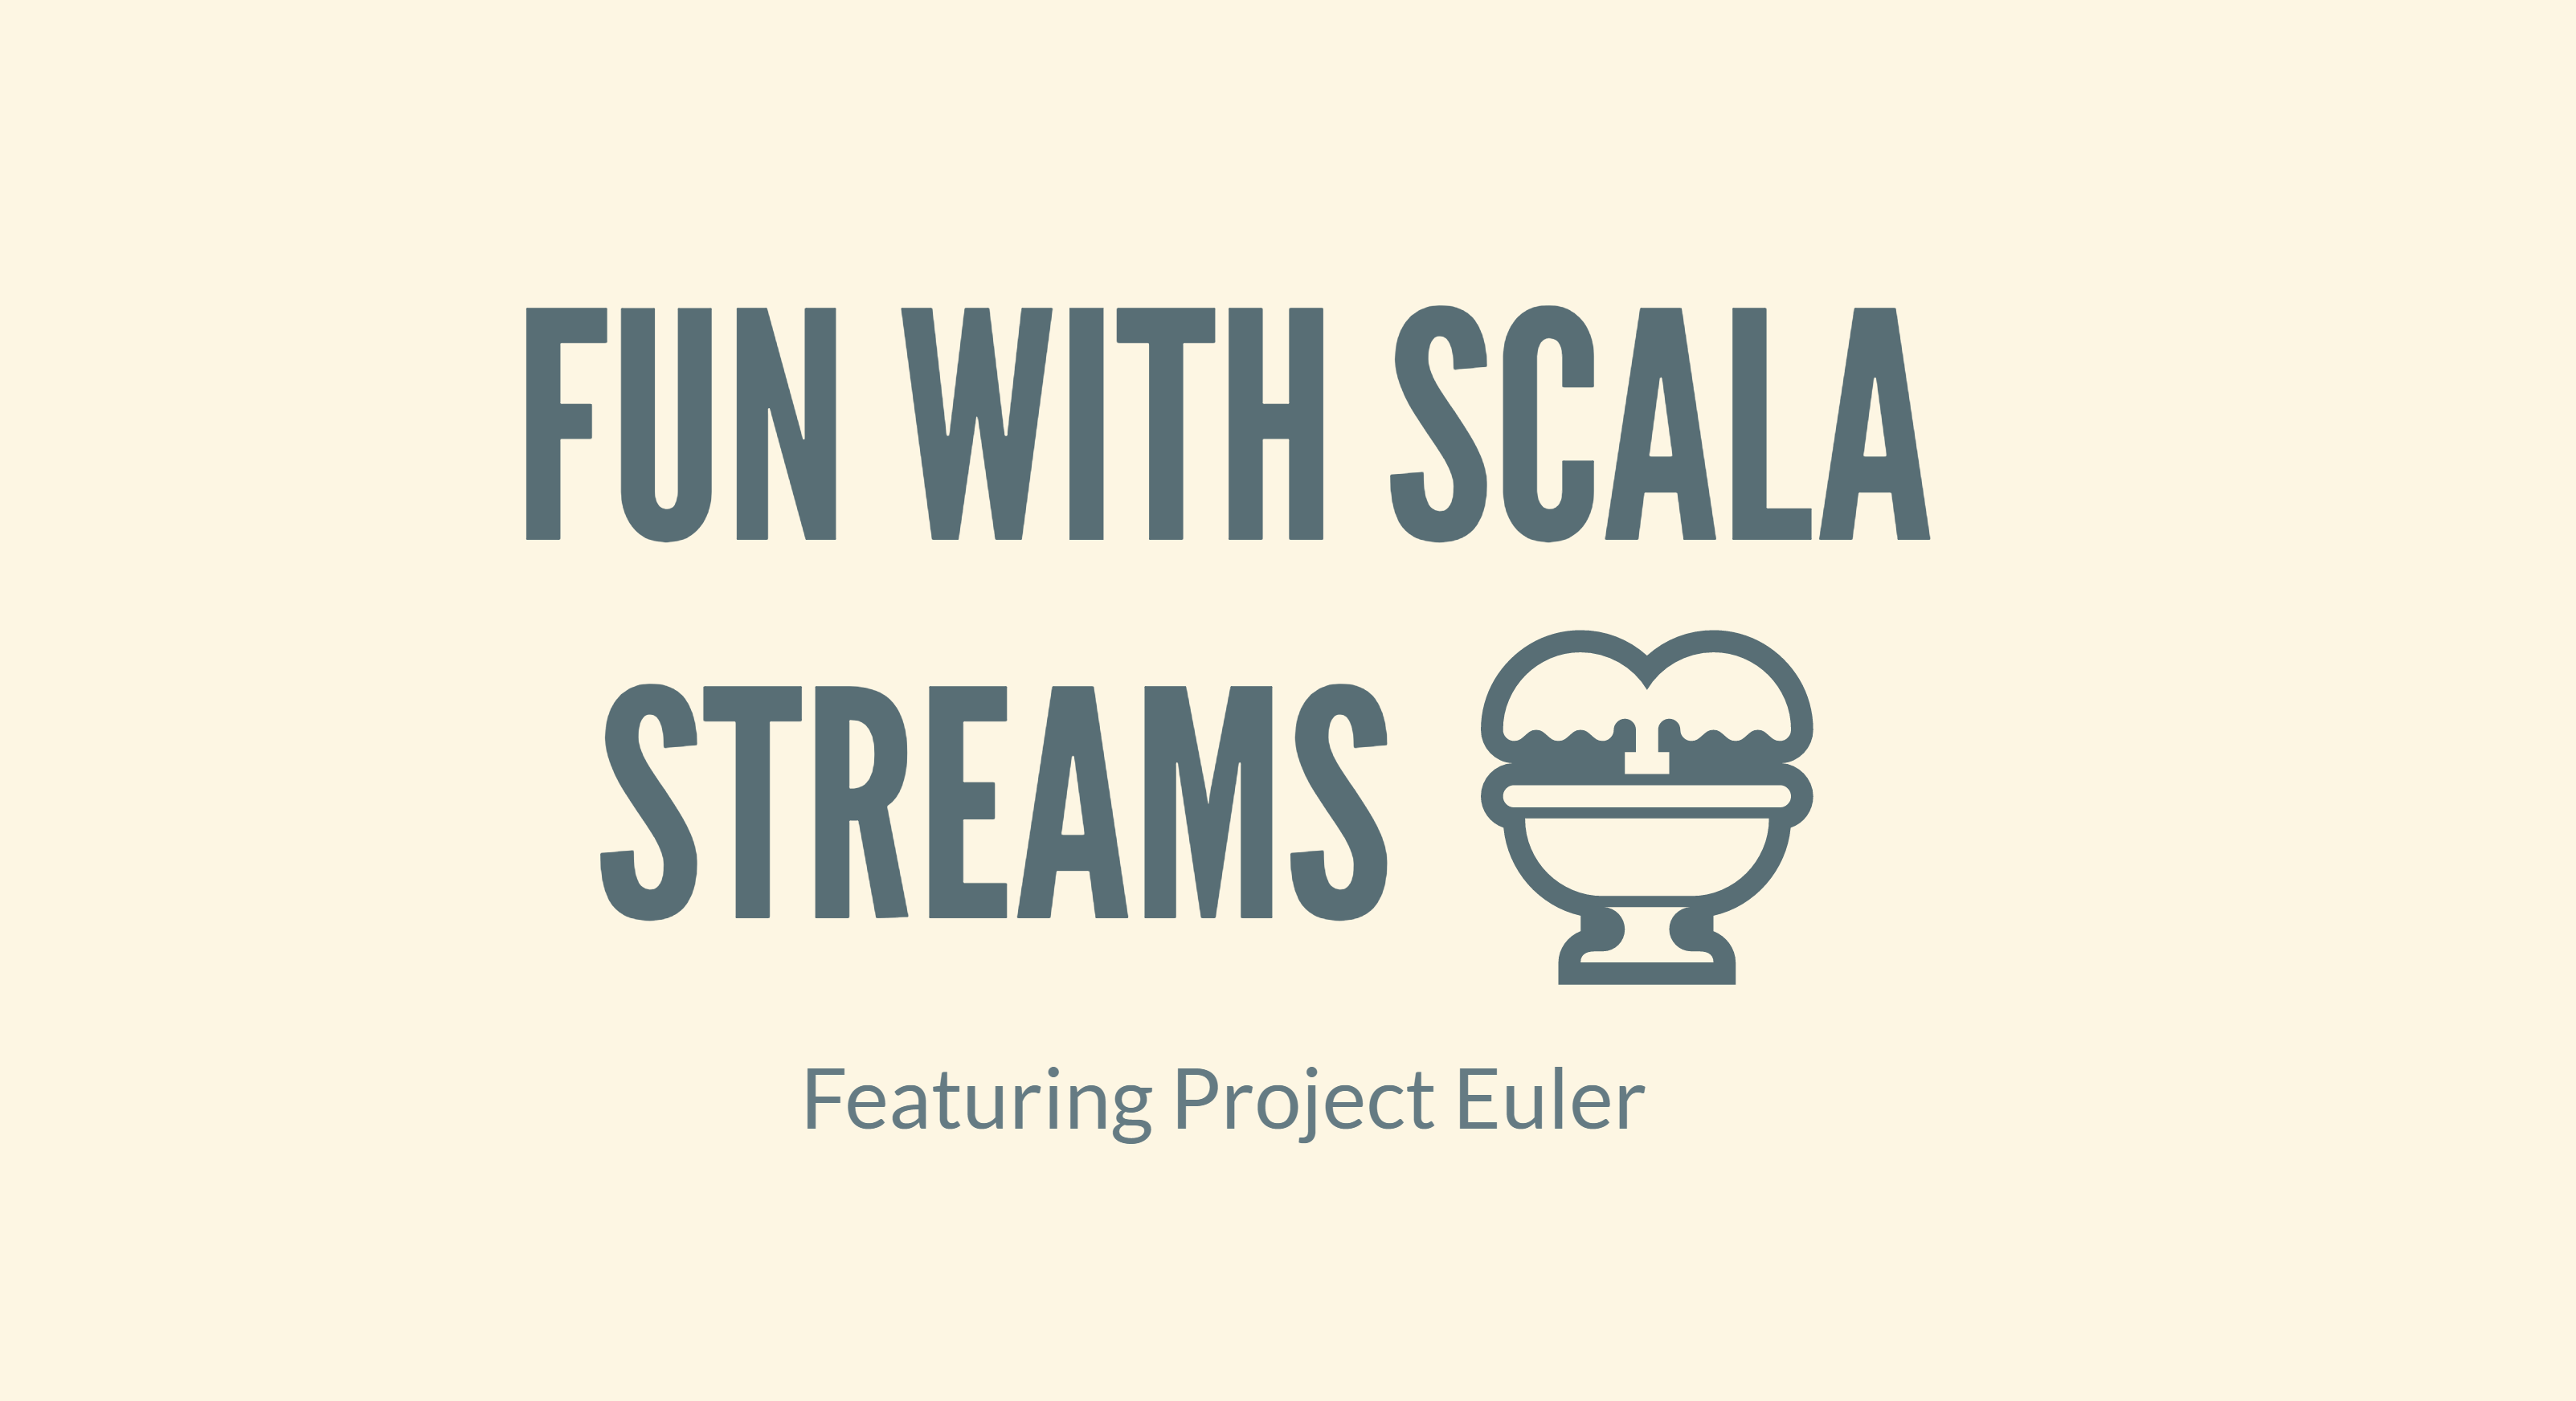 Fun with Scala Streams
